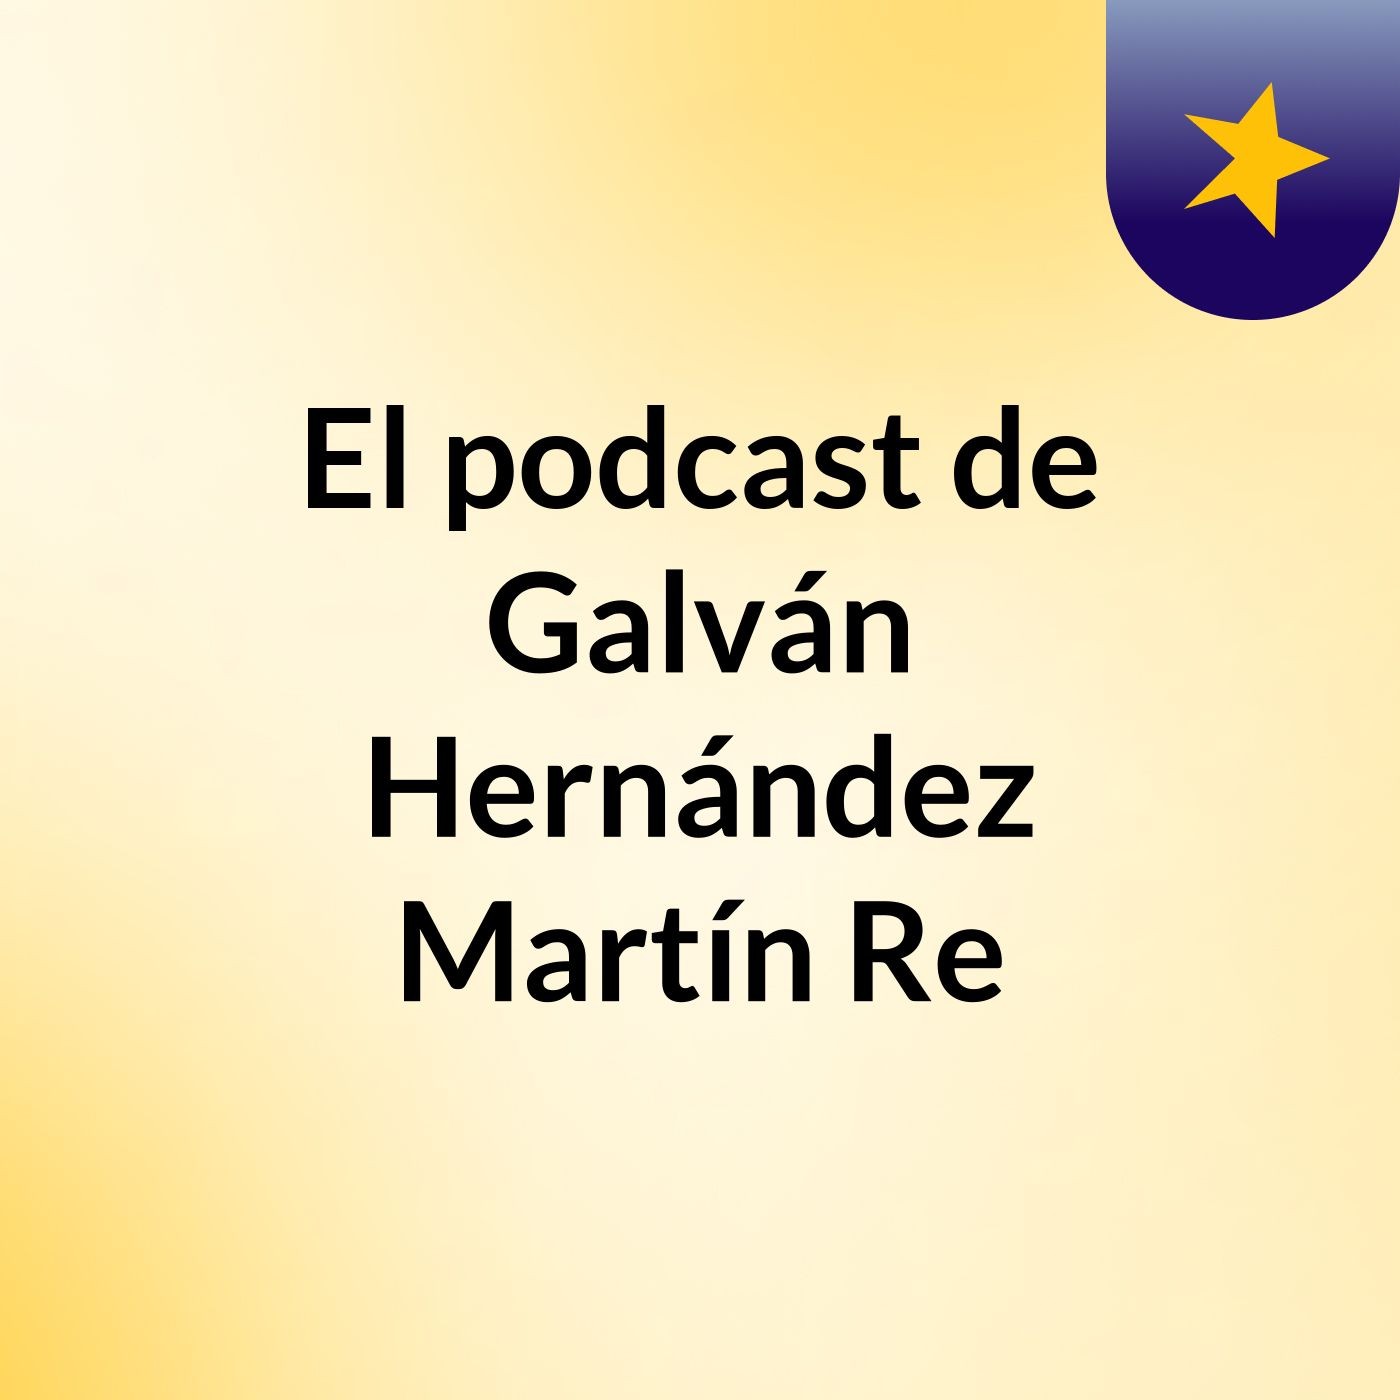 El podcast de Galván Hernández Martín Re